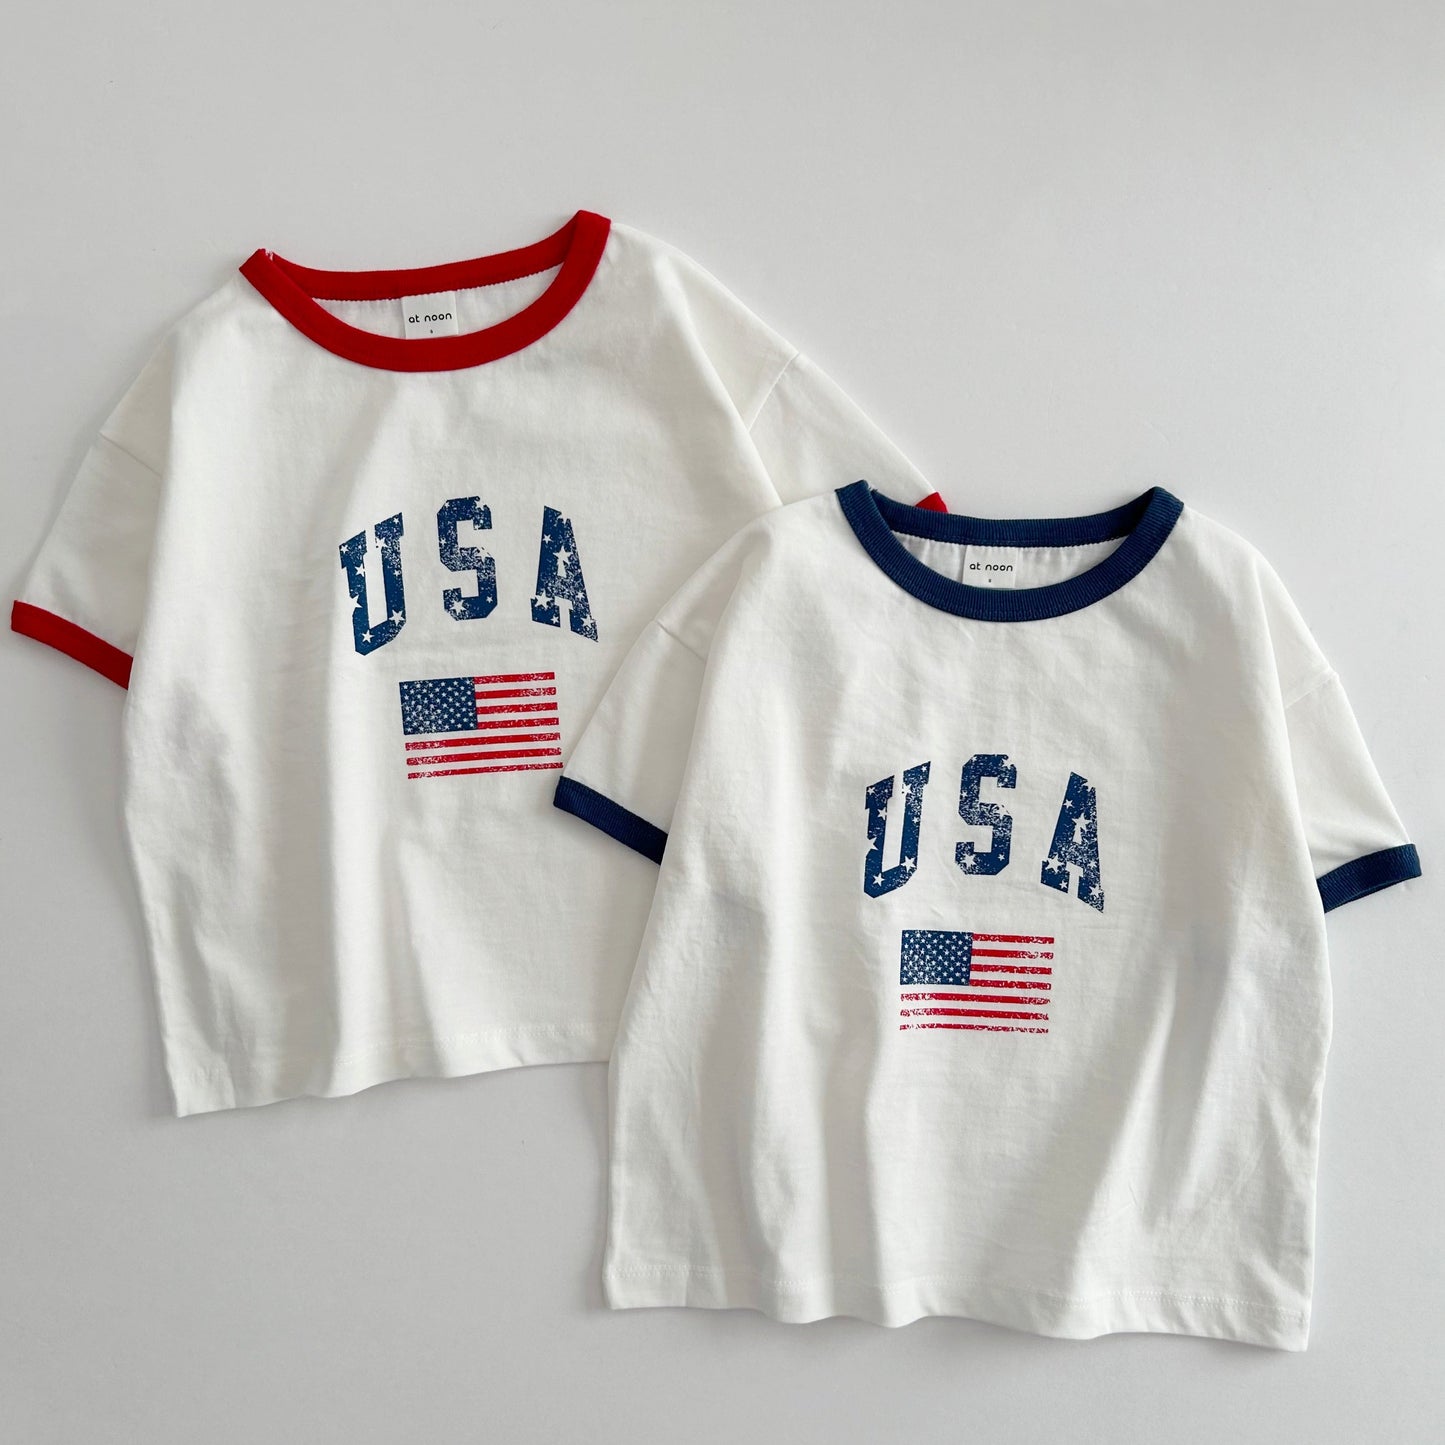 [At Noon Original Design] Adult Oversized Vintage Print USA Ringer T-Shirt - 2 Colors